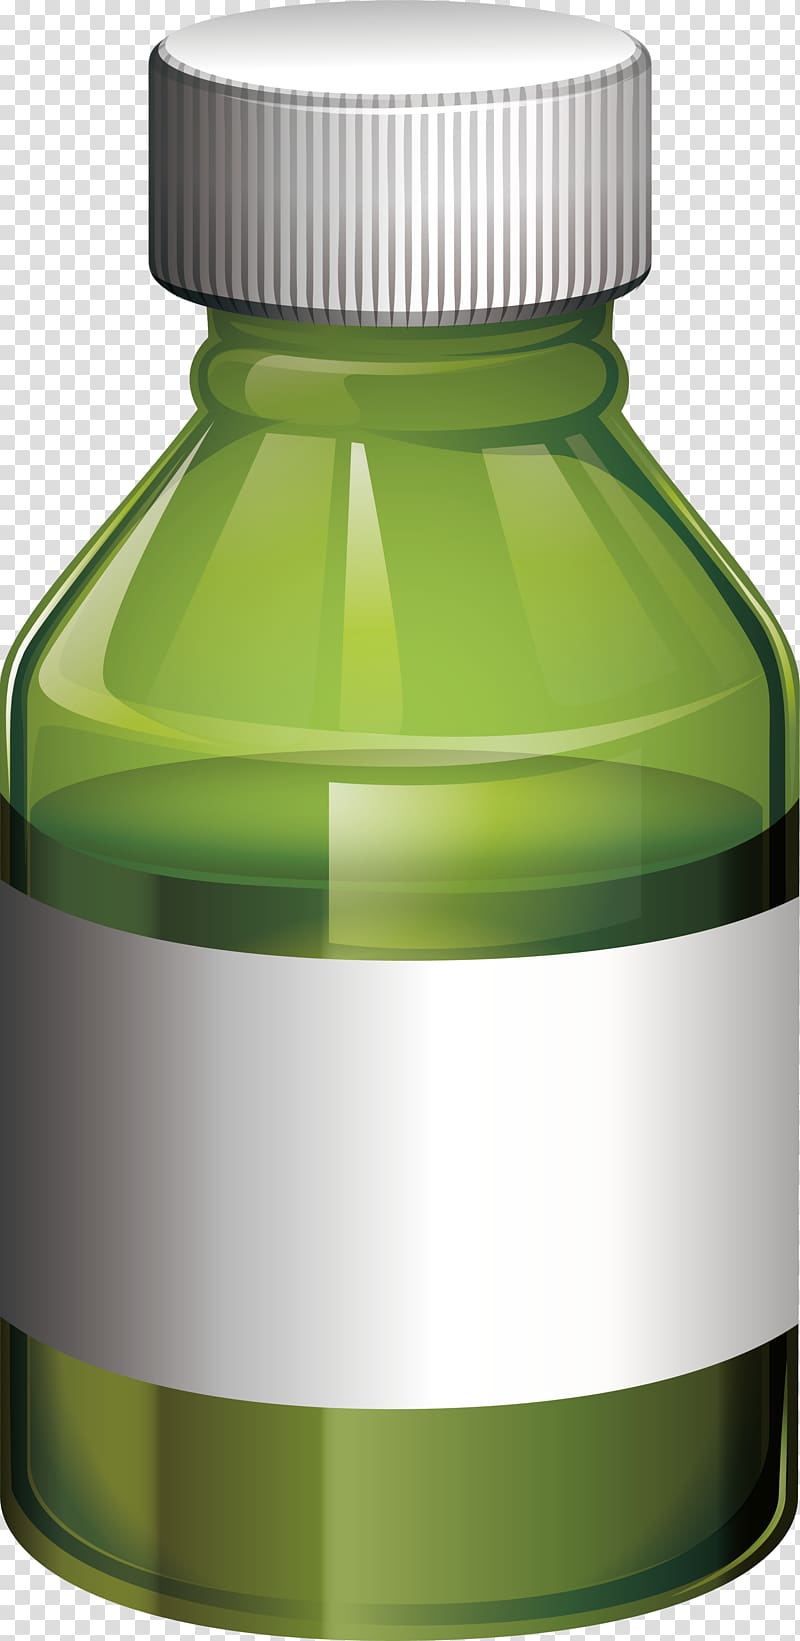 illustration , Green medicine bottle transparent background PNG clipart